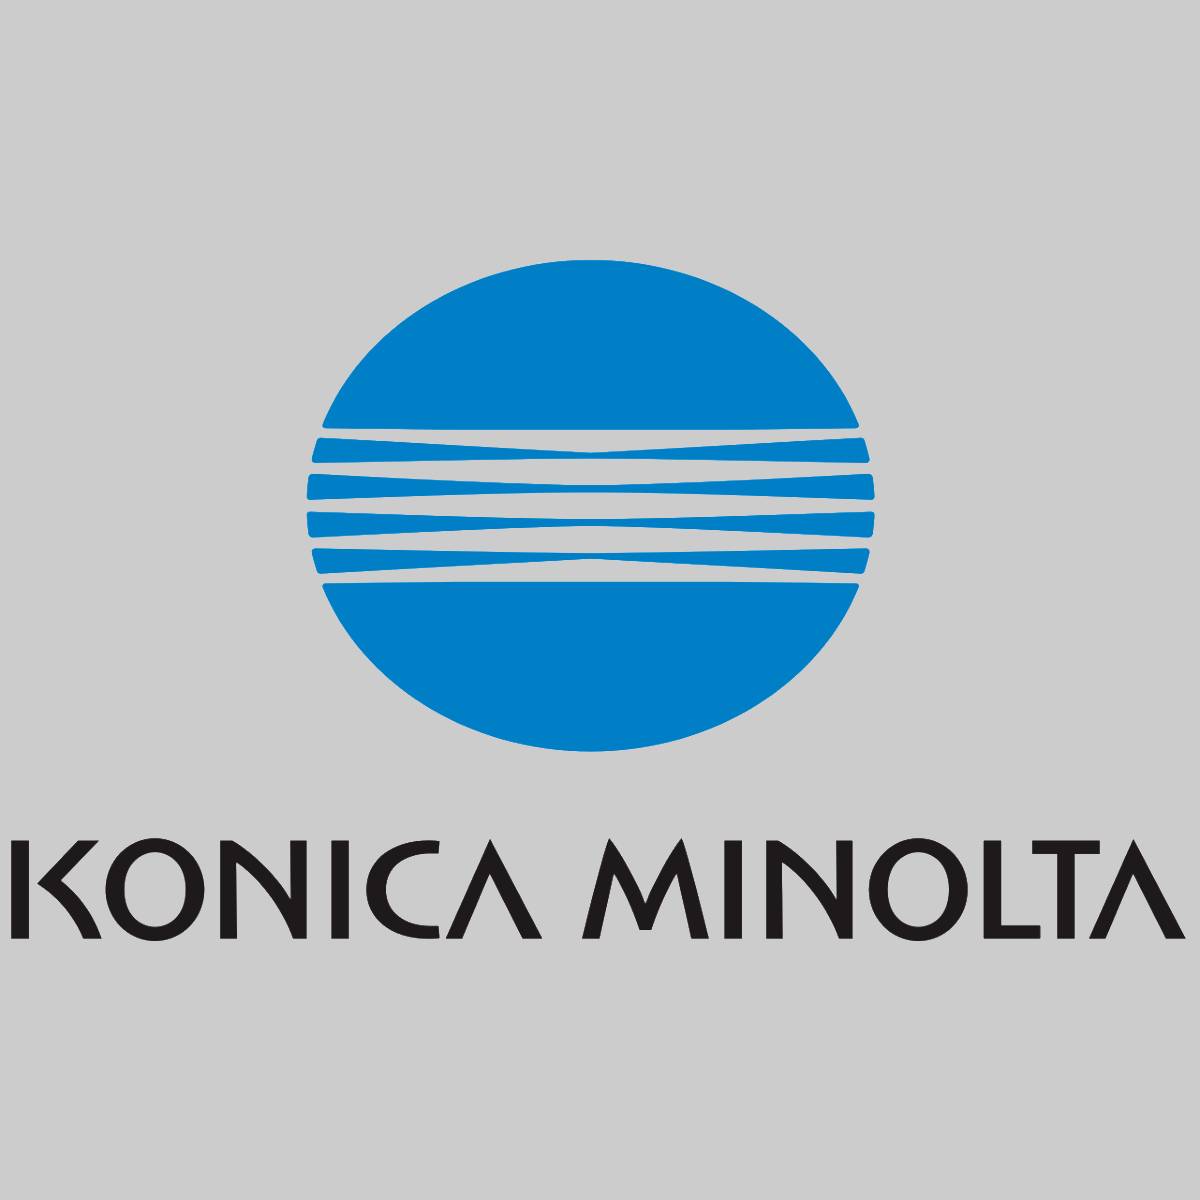 "Toner d'origine Konica Minolta Magenta A0DK352 pour la série 4600 NOUVEAU OVP